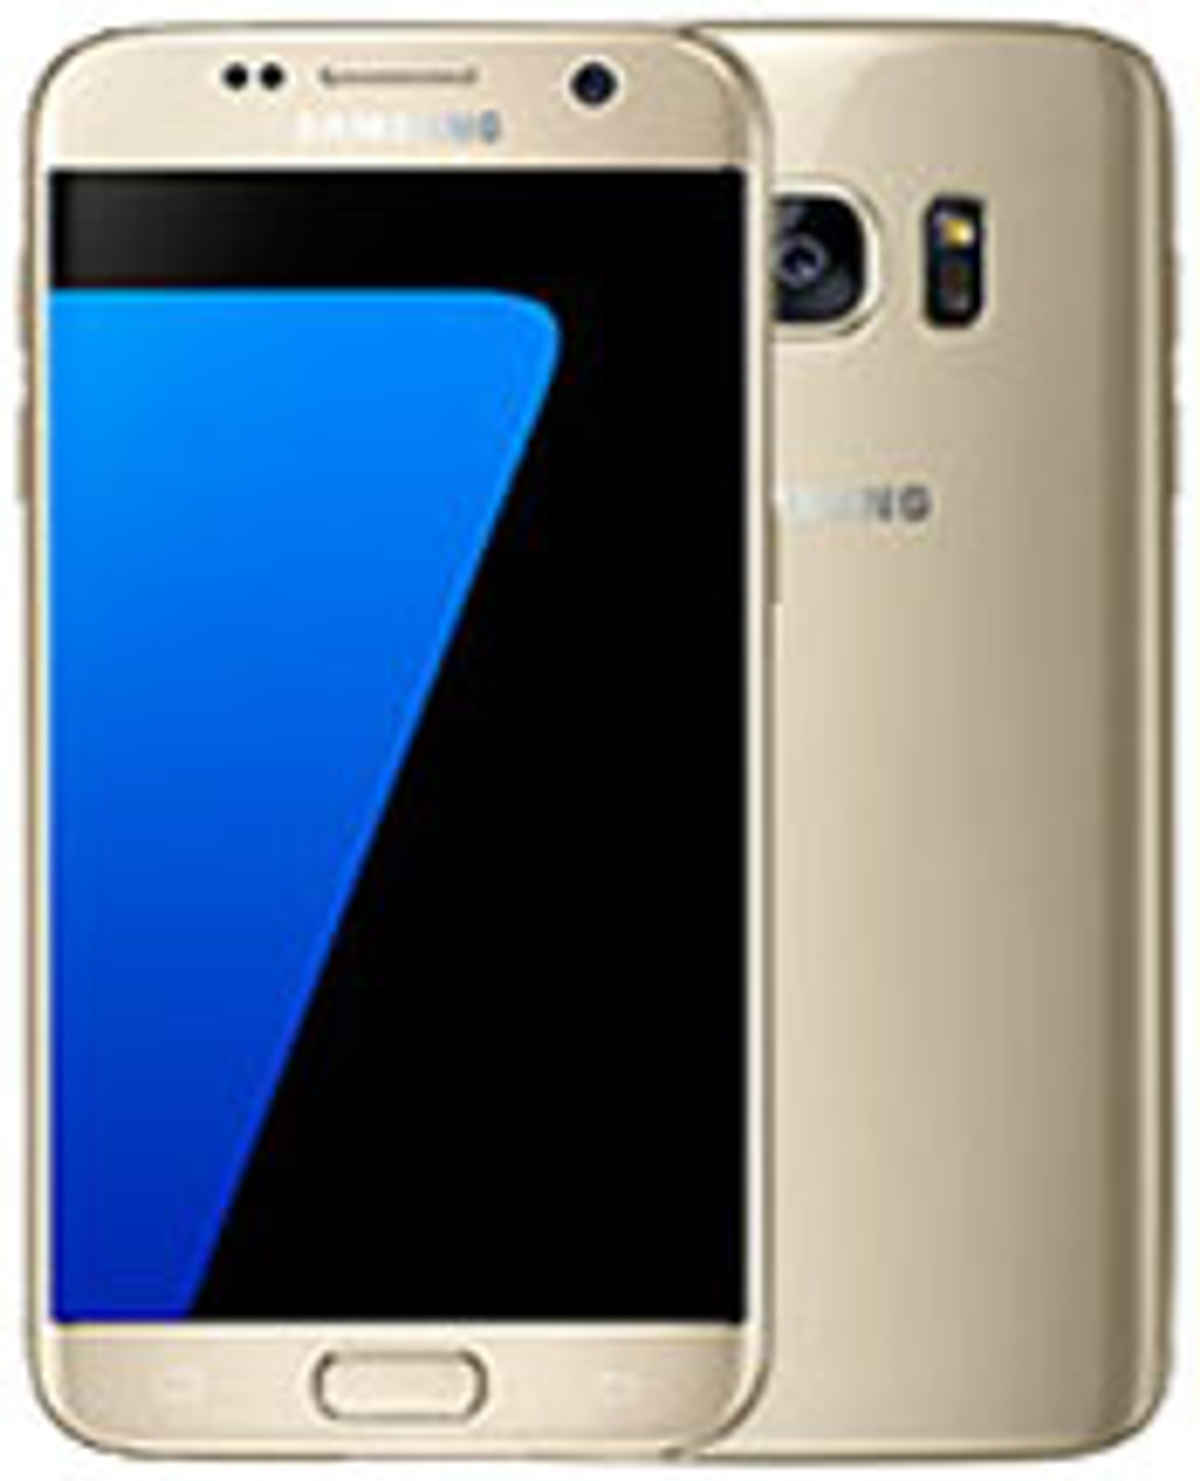 Best Samsung Phones In India 17th Mar 2020 Latest Smartphones